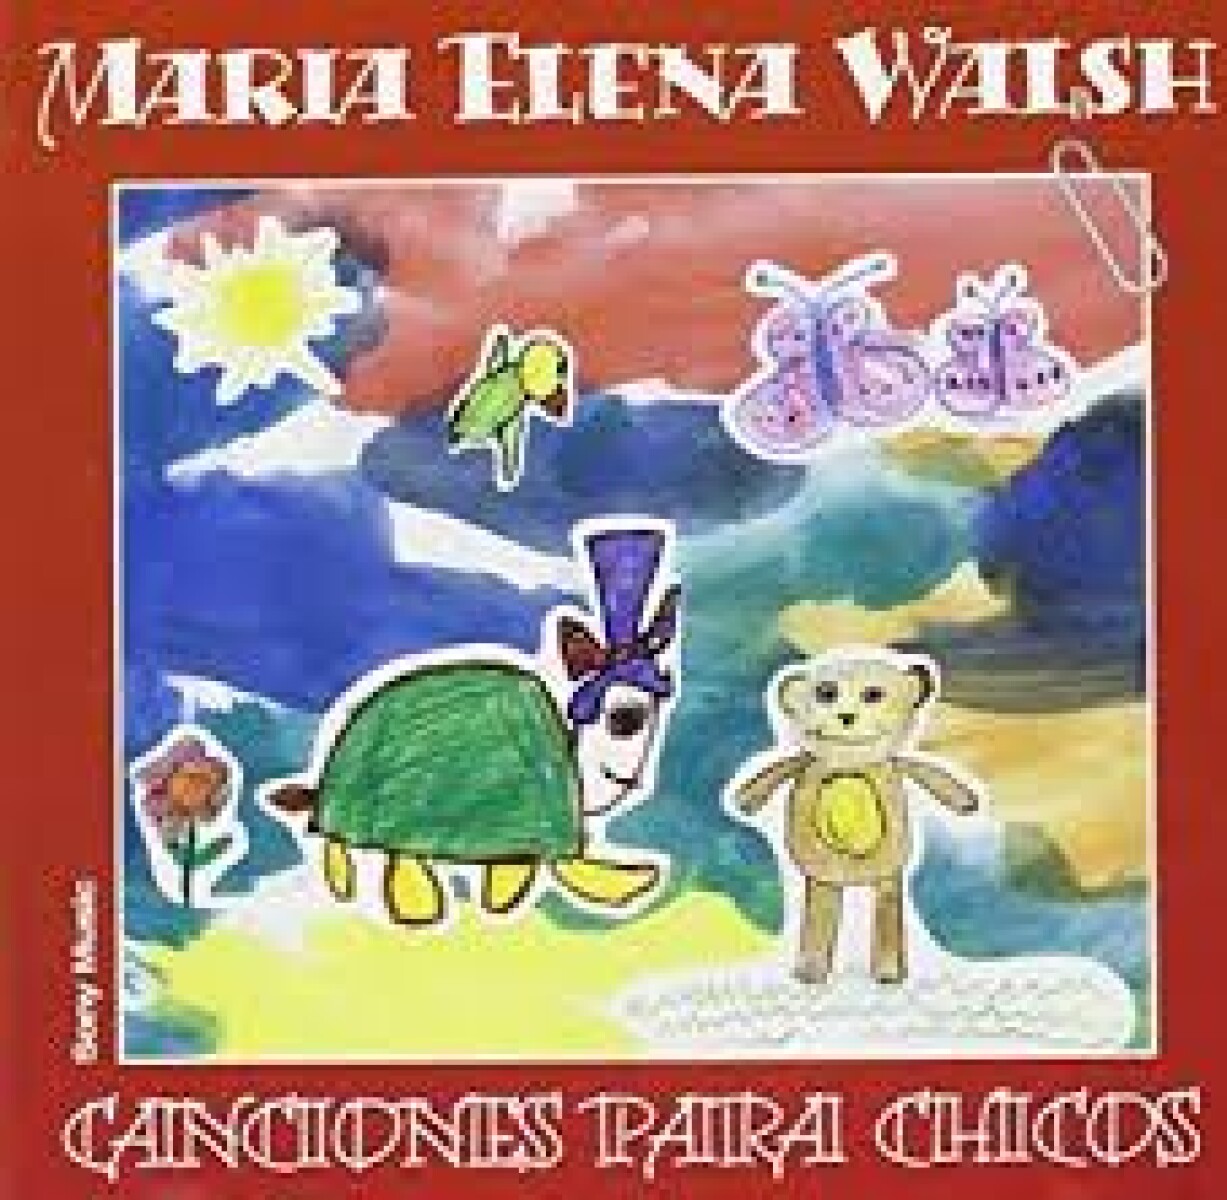 Maria Elena Walsh - Canciones Para Chicos - Cd 